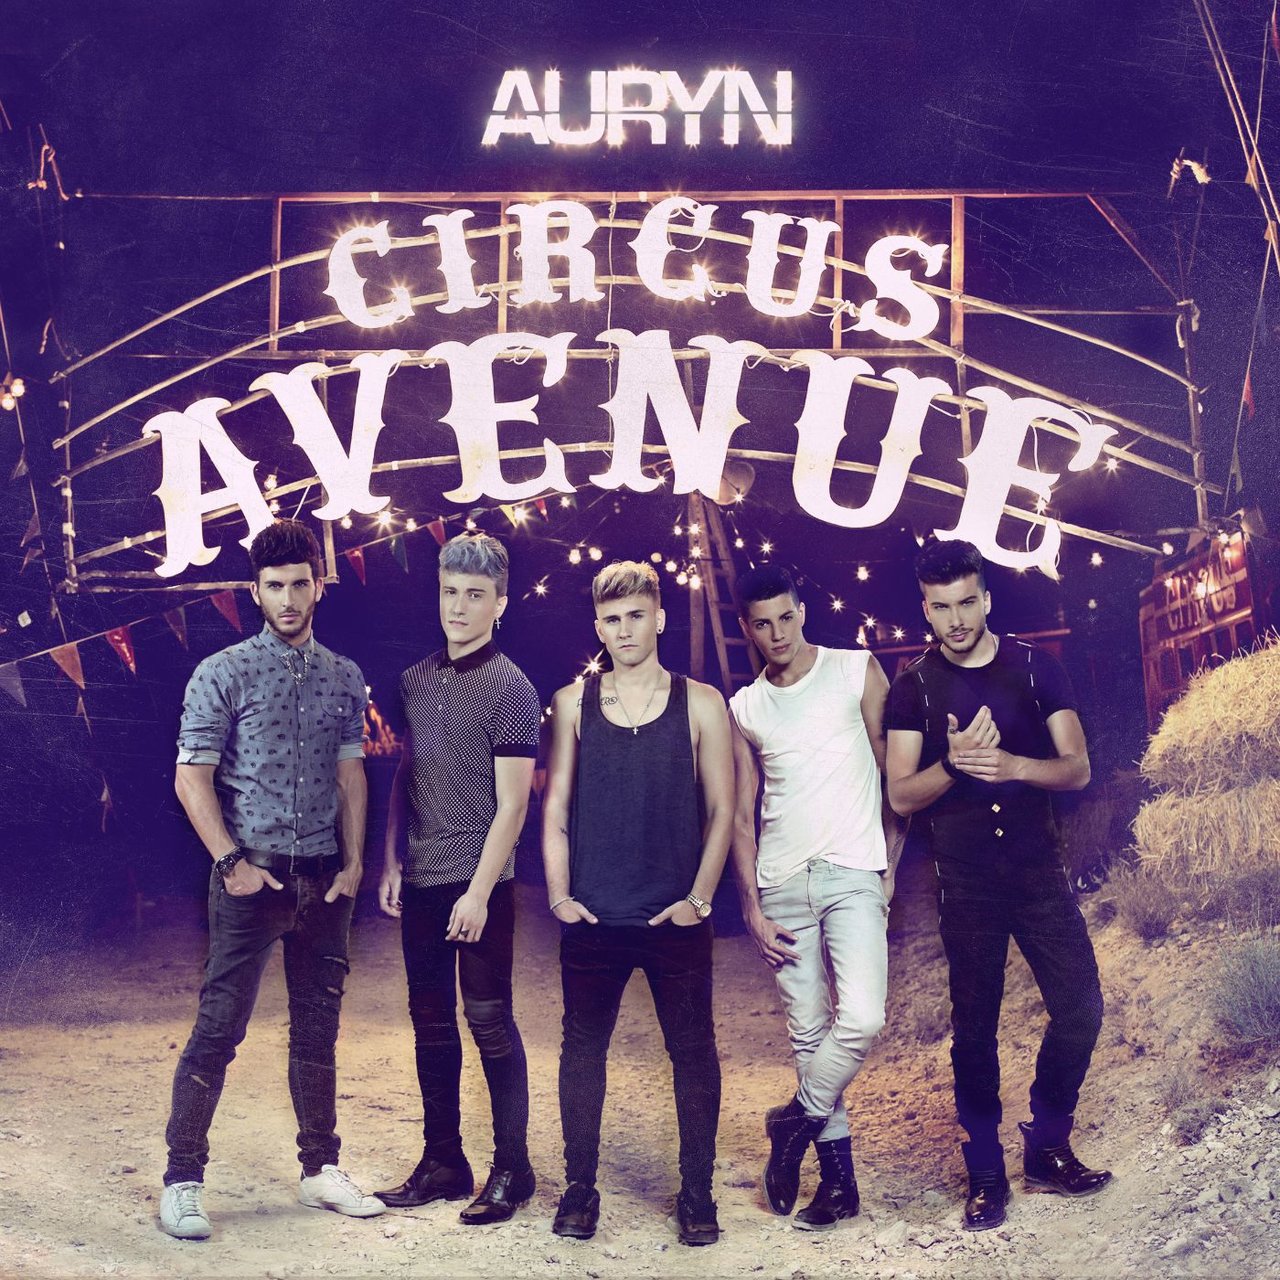 Auryn Circus Avenue cover artwork